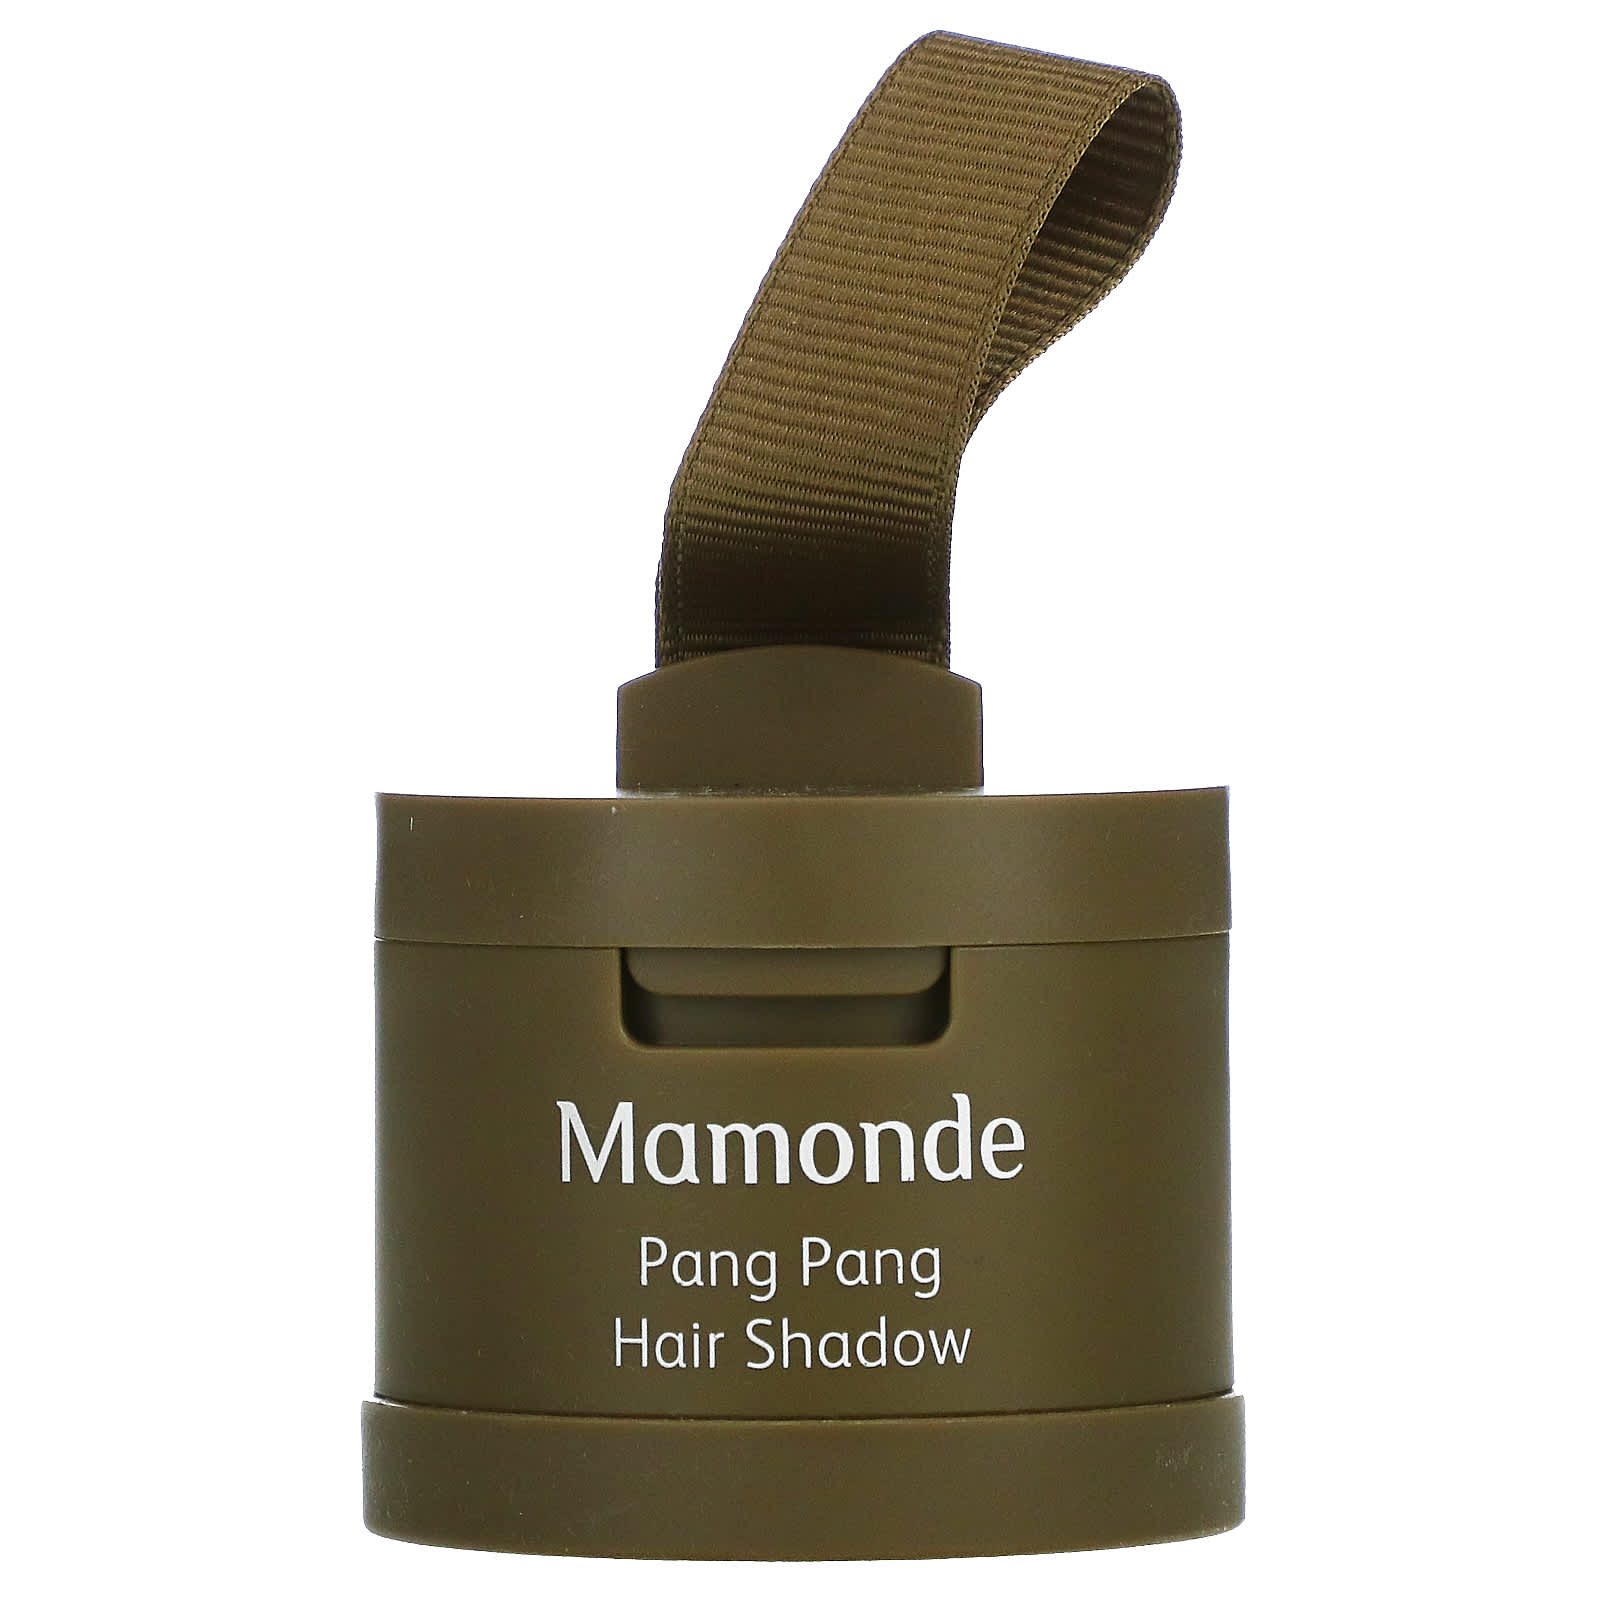 Mamonde, Pang Pang Hair Shadow, 0.12 oz (3.5 g)